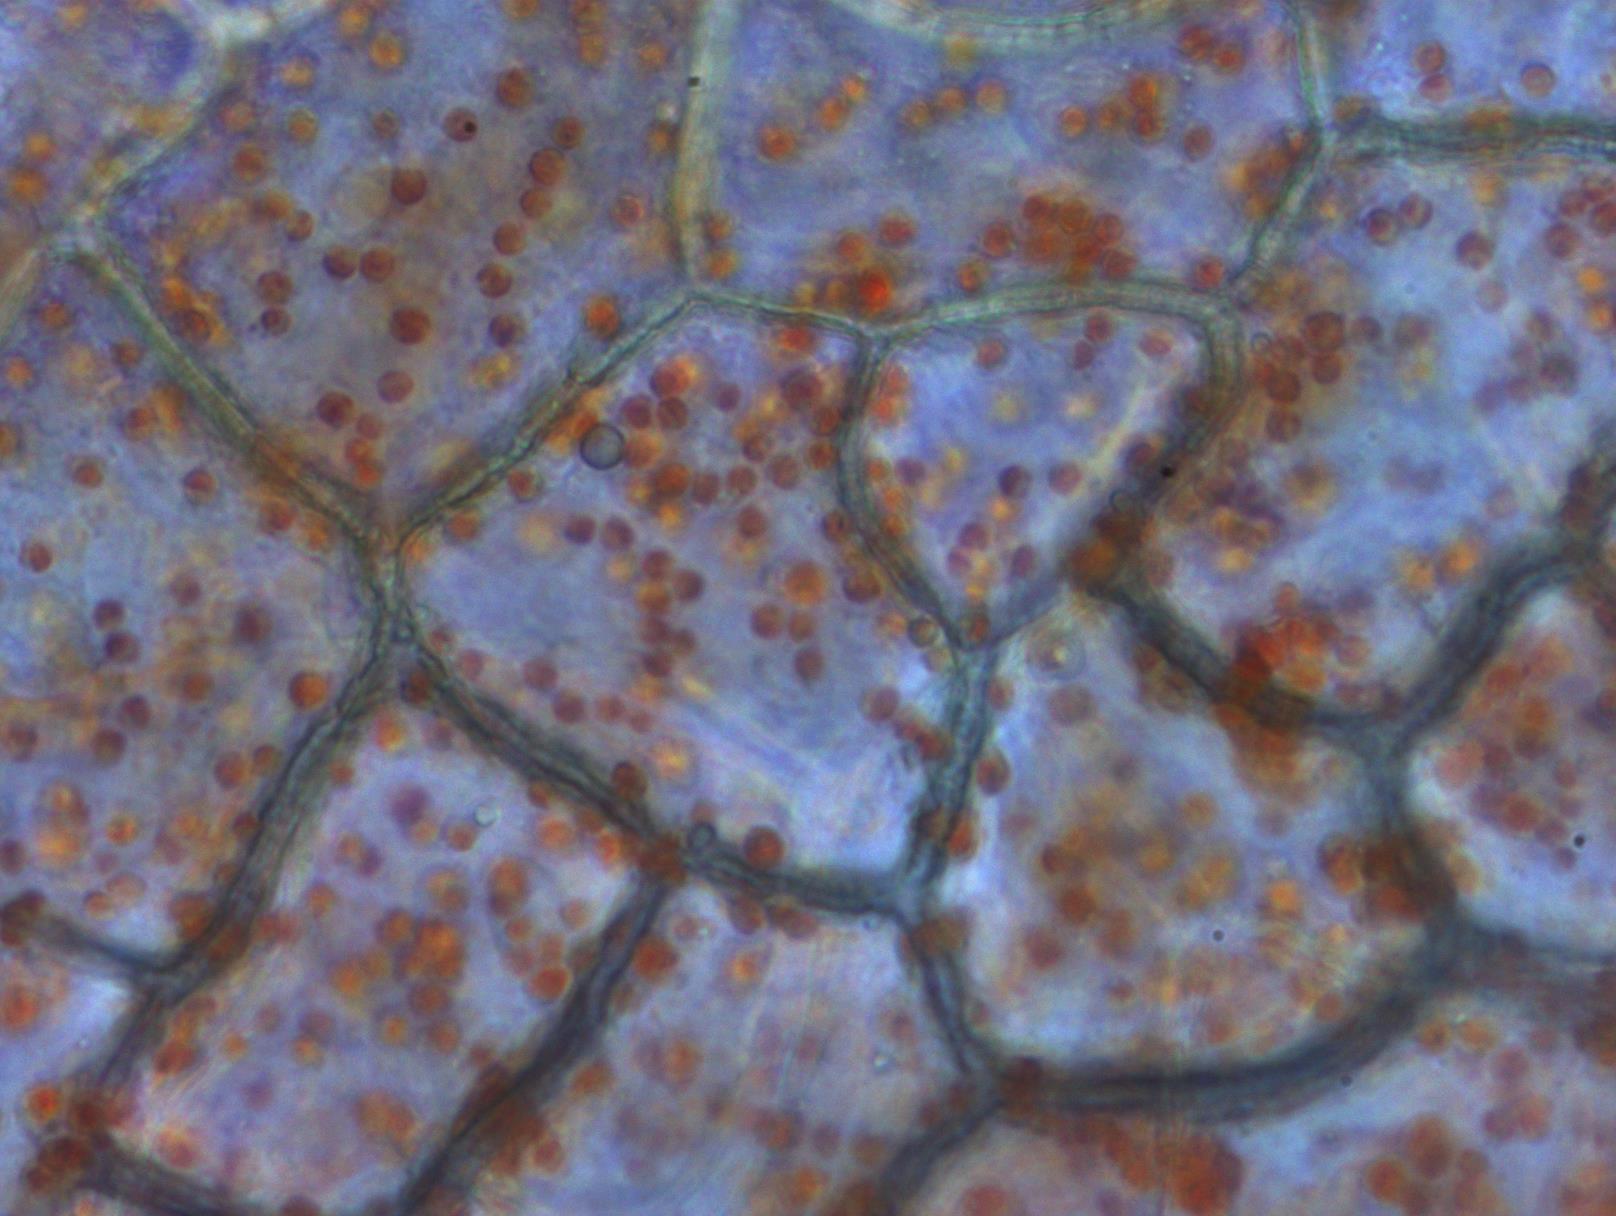 Una imagen más cercana de células epidérmicas de pimiento rojo y cromoplastos